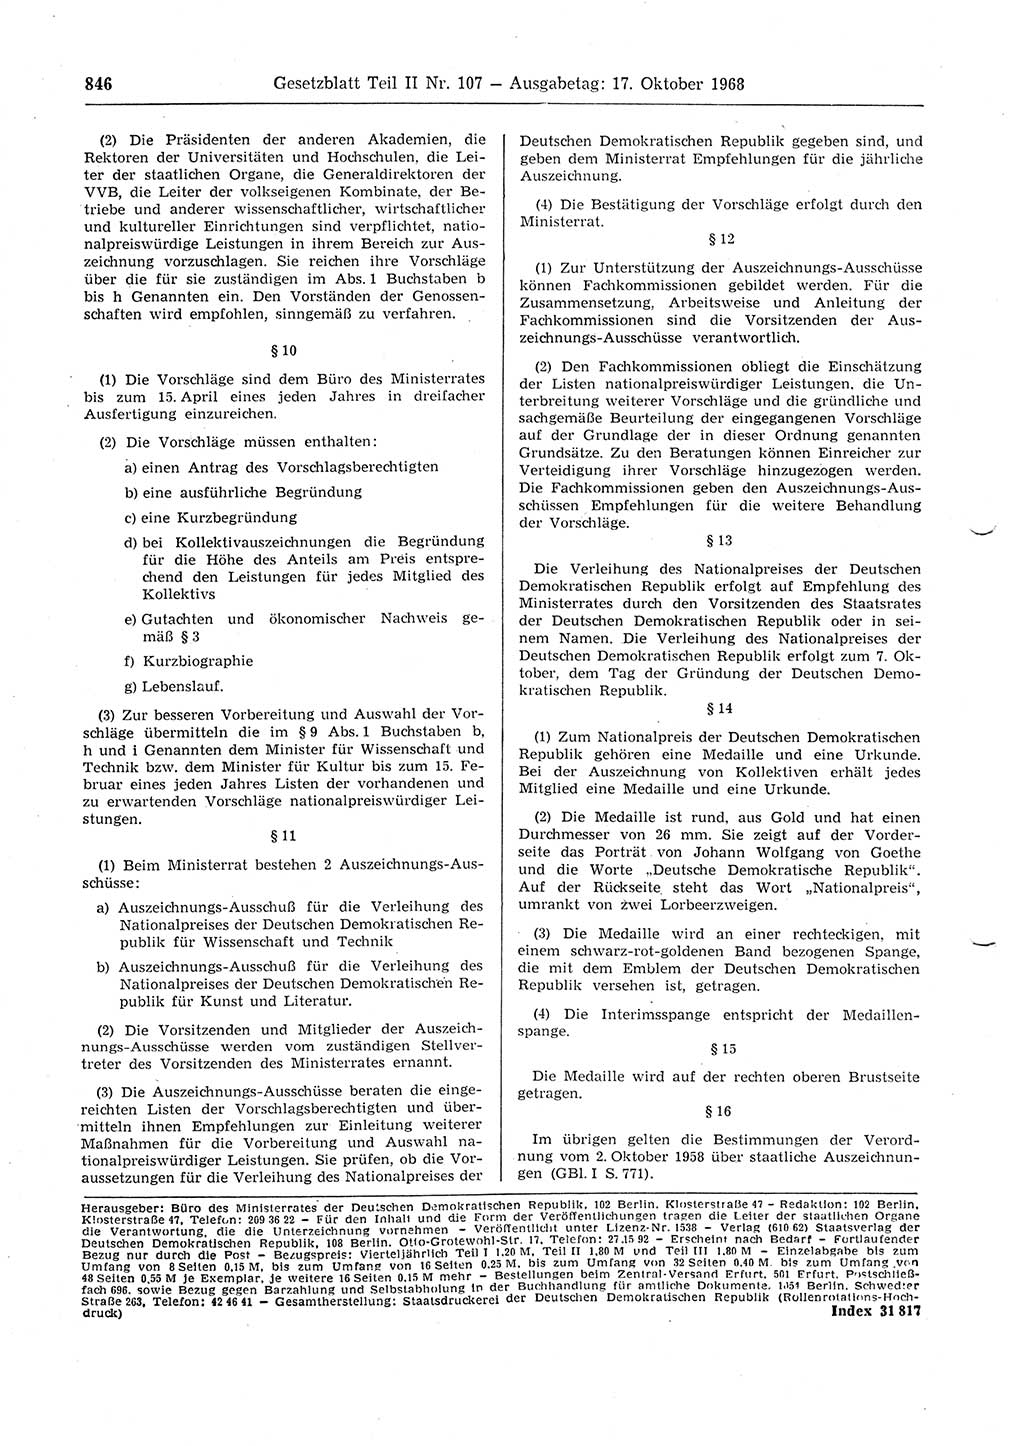 Gesetzblatt (GBl.) der Deutschen Demokratischen Republik (DDR) Teil ⅠⅠ 1968, Seite 846 (GBl. DDR ⅠⅠ 1968, S. 846)